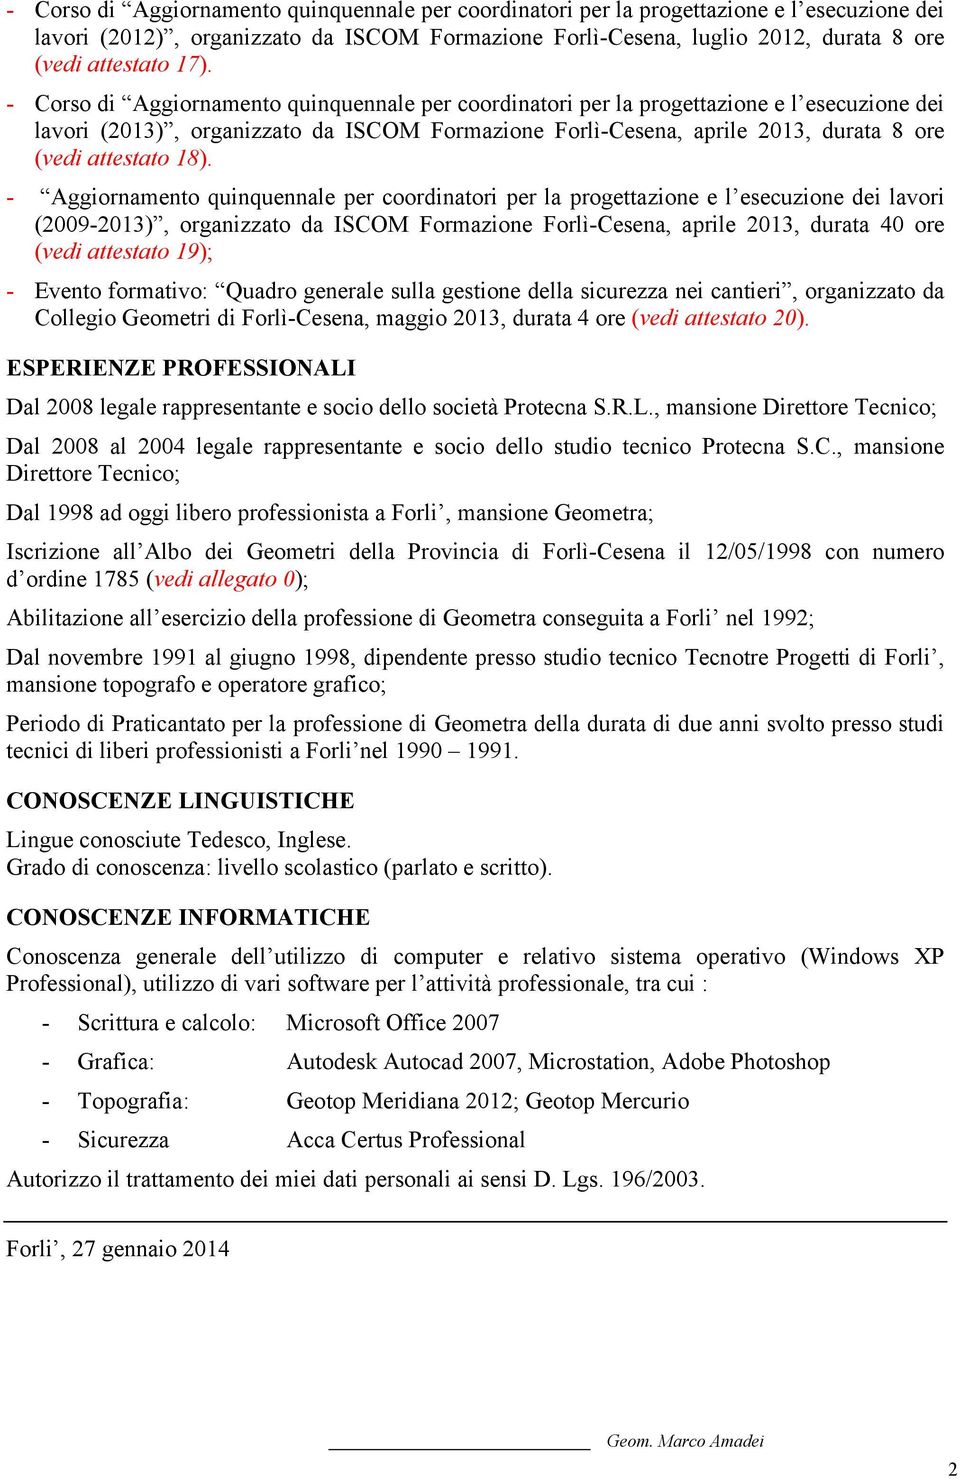 - Aggiornamento quinquennale per coordinatori per la progettazione e l esecuzione dei lavori (2009-2013), organizzato da ISCOM Formazione Forlì-Cesena, aprile 2013, durata 40 ore (vedi attestato 19);